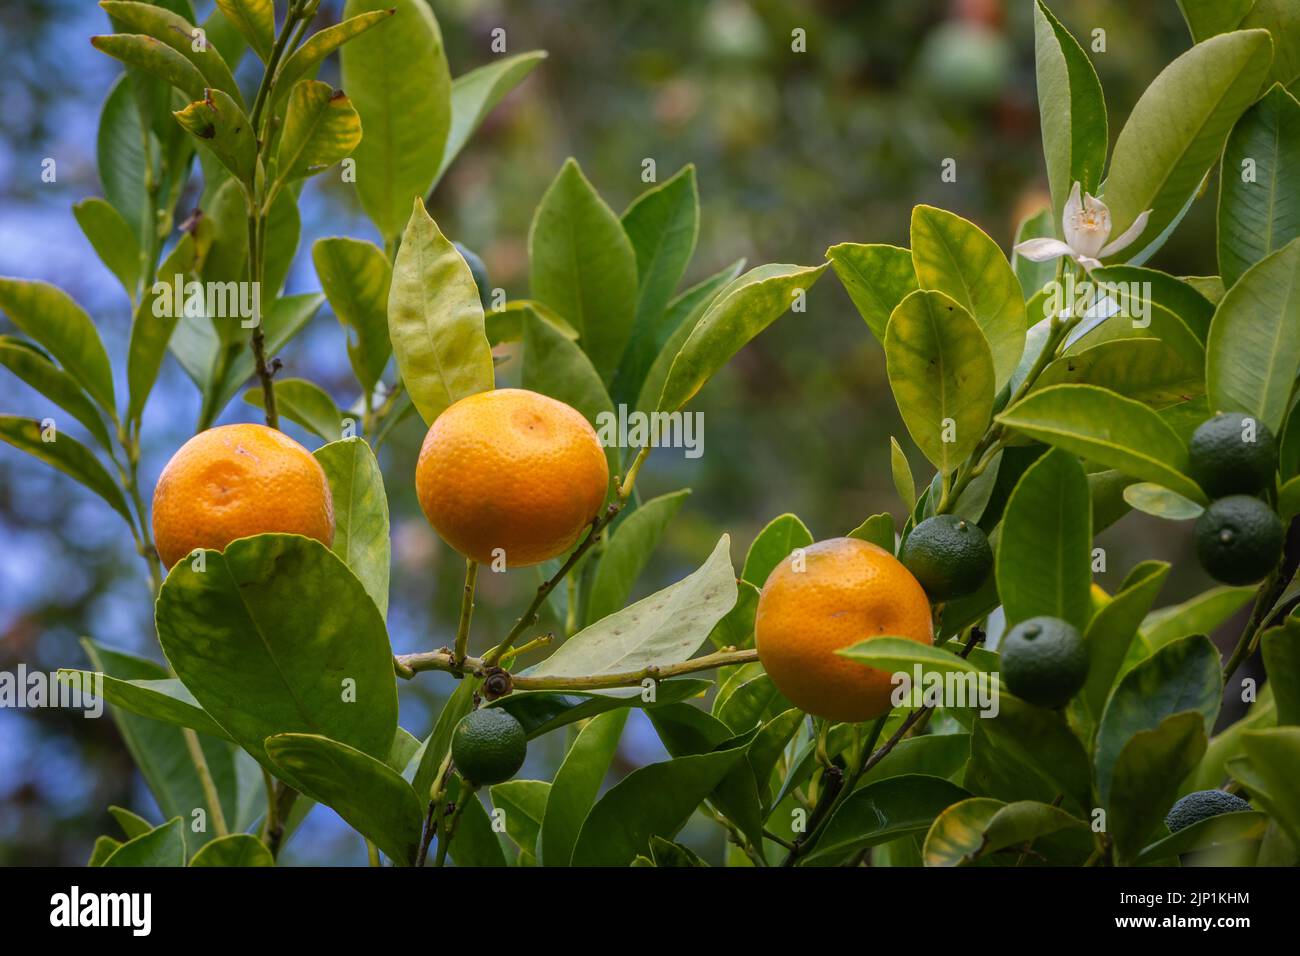 Calamondin (Citrofortunella microcarpa, Citrus fortunella, Citrus mitis), ripe and unripe fruit on a bush. Stock Photo